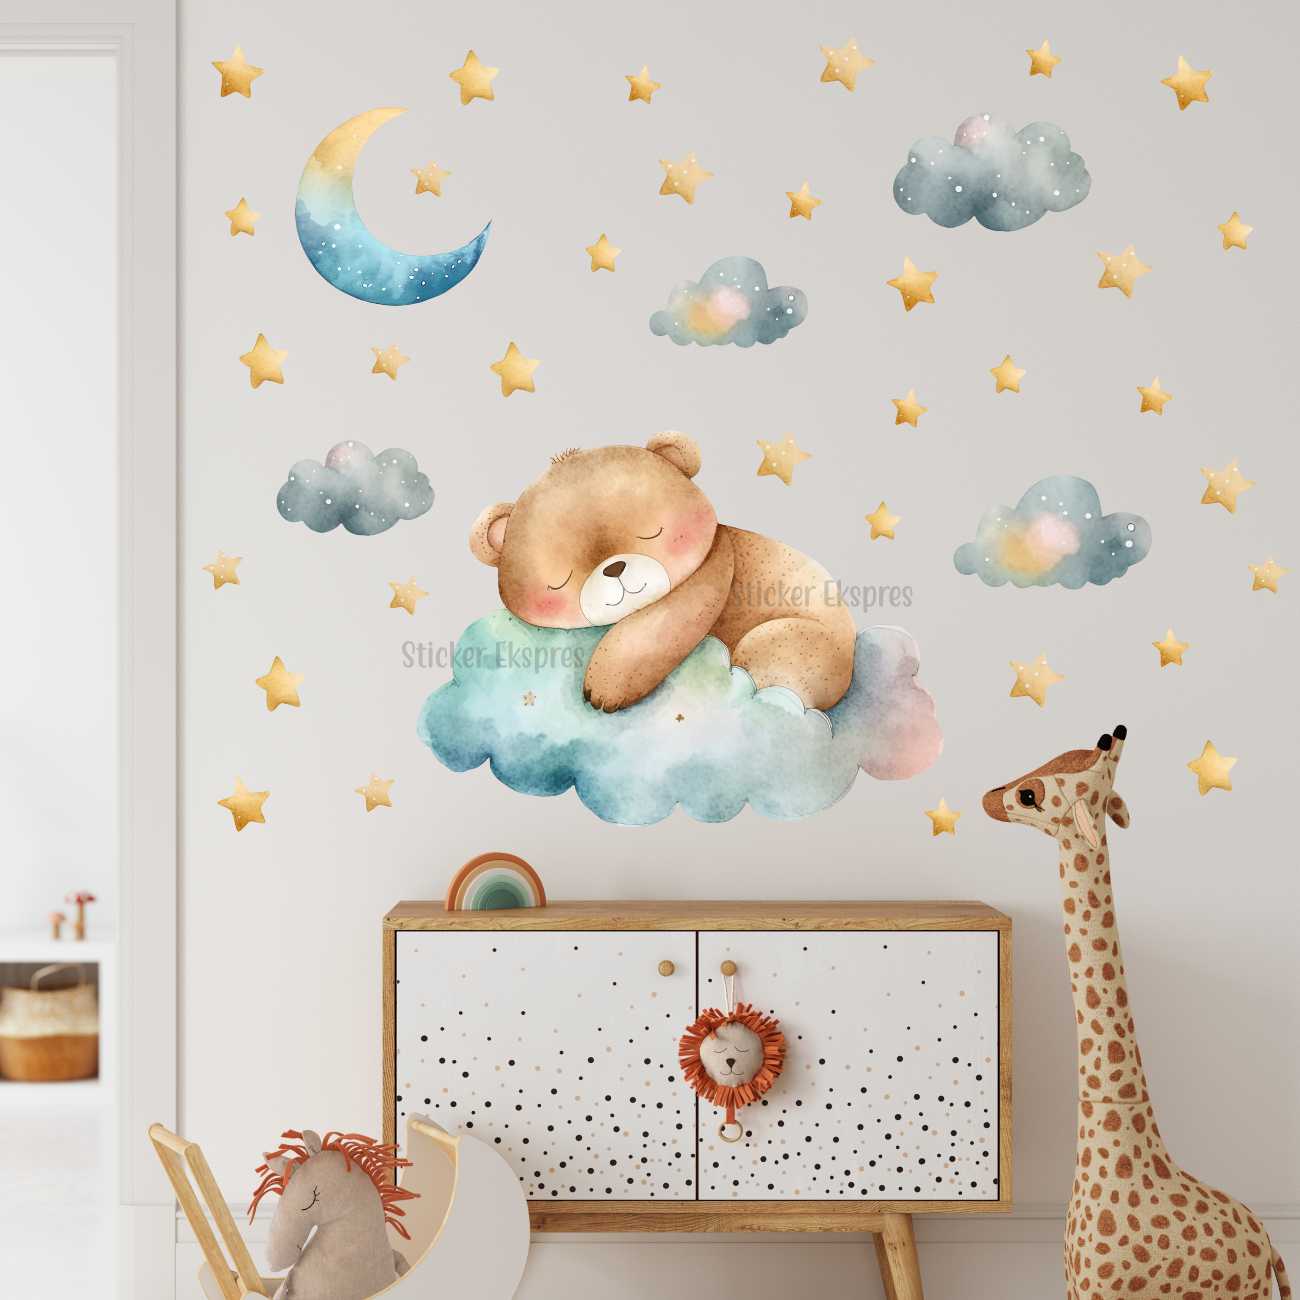 Uyuyan Sevimli Erkek Ayıcık Çocuk Odası Duvar Sticker Seti